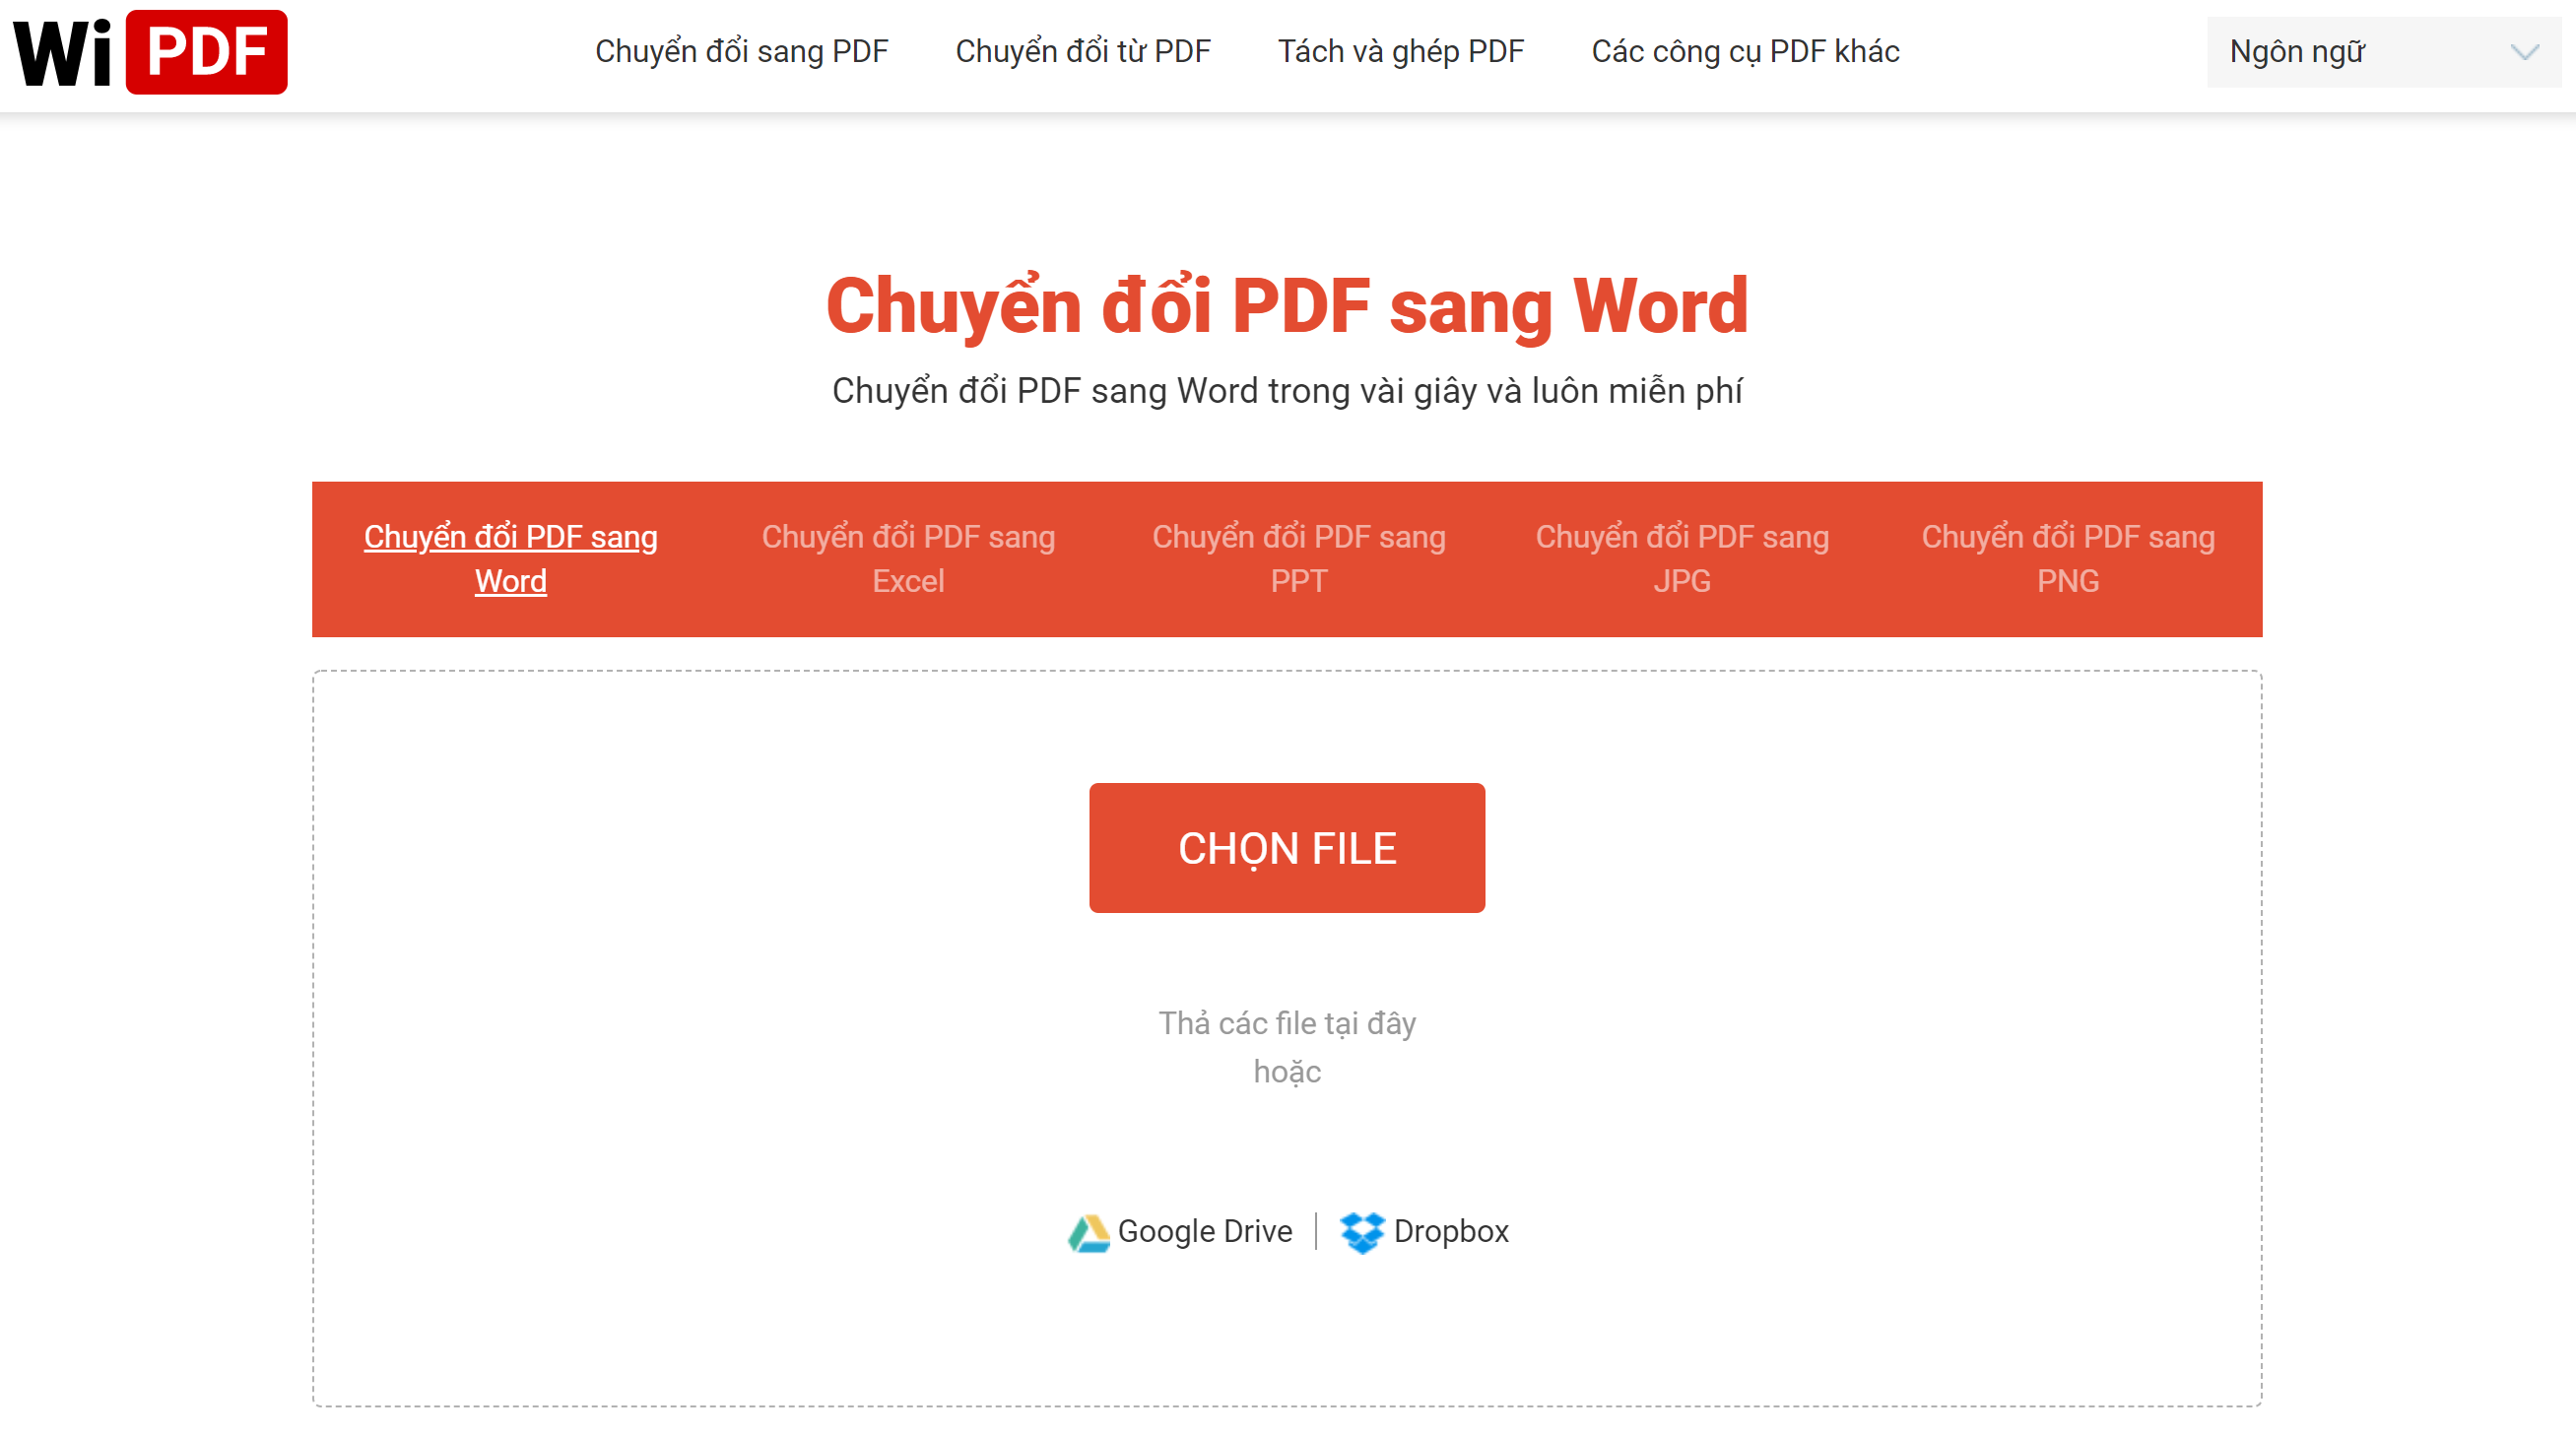 WiPDF - Cách chuyển đổi PDF sang Word online miễn phí và không giới hạn